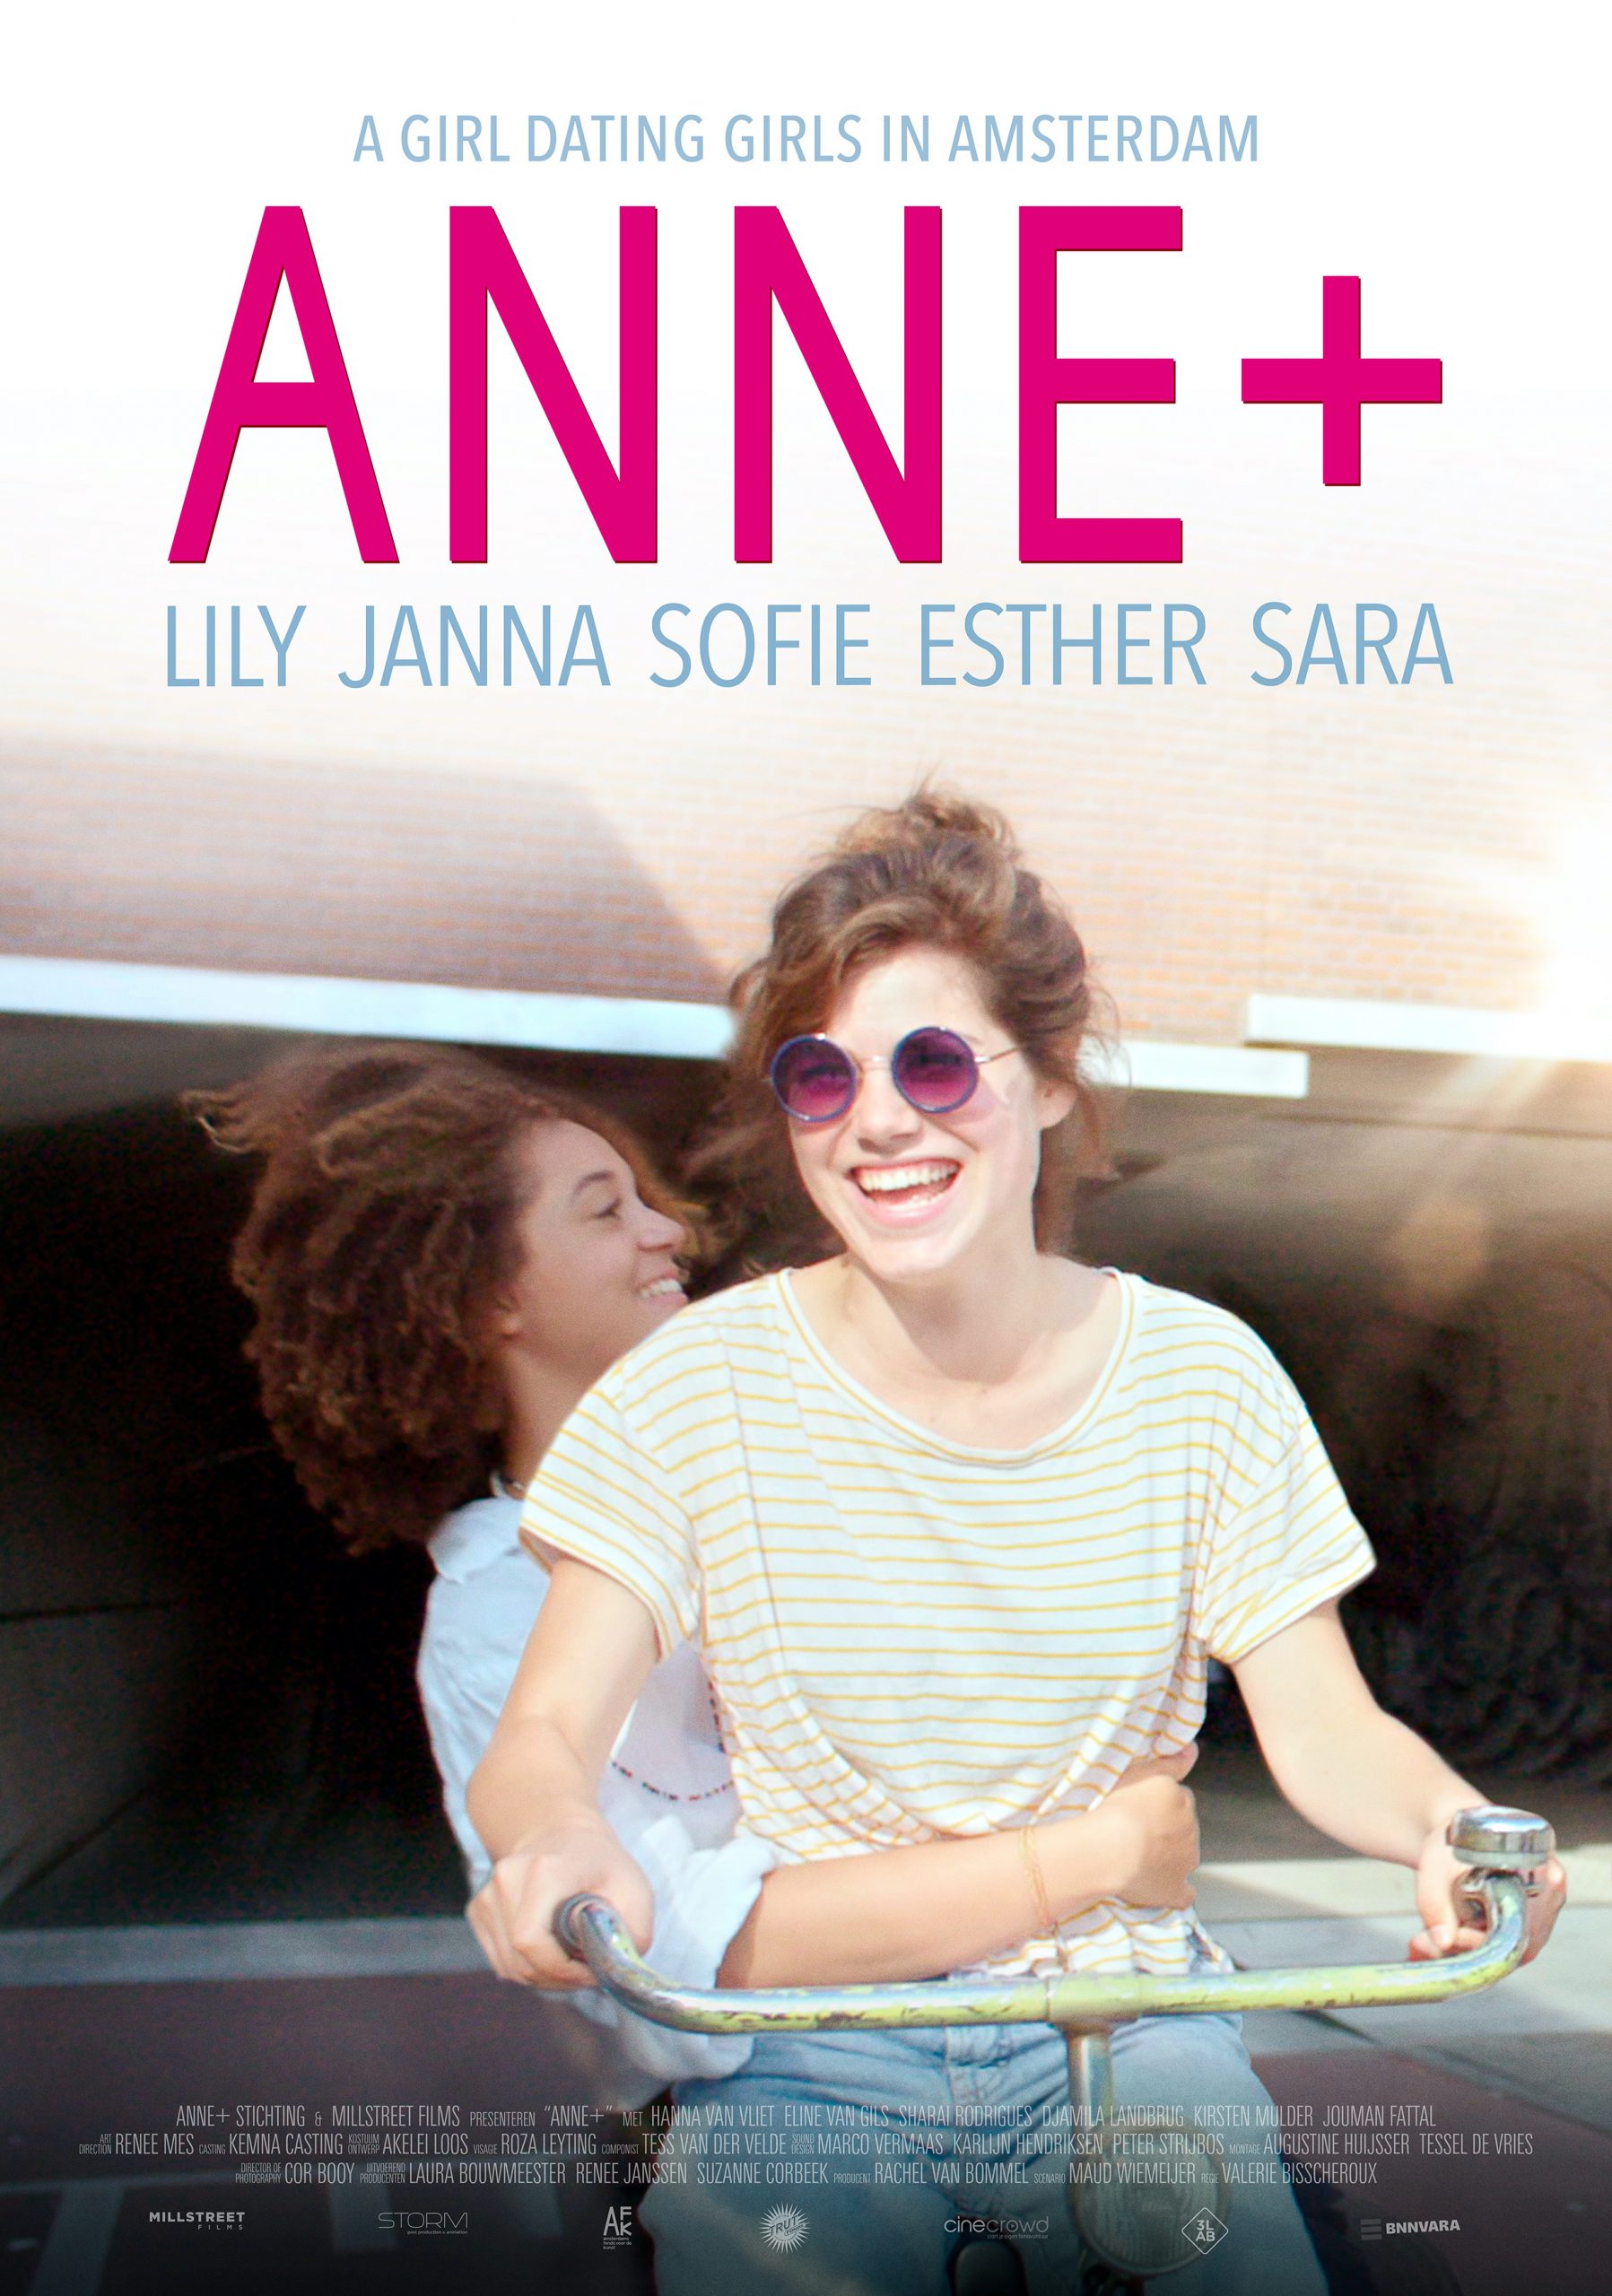 [心得] Anne+ S01 (雷) 荷蘭女同劇